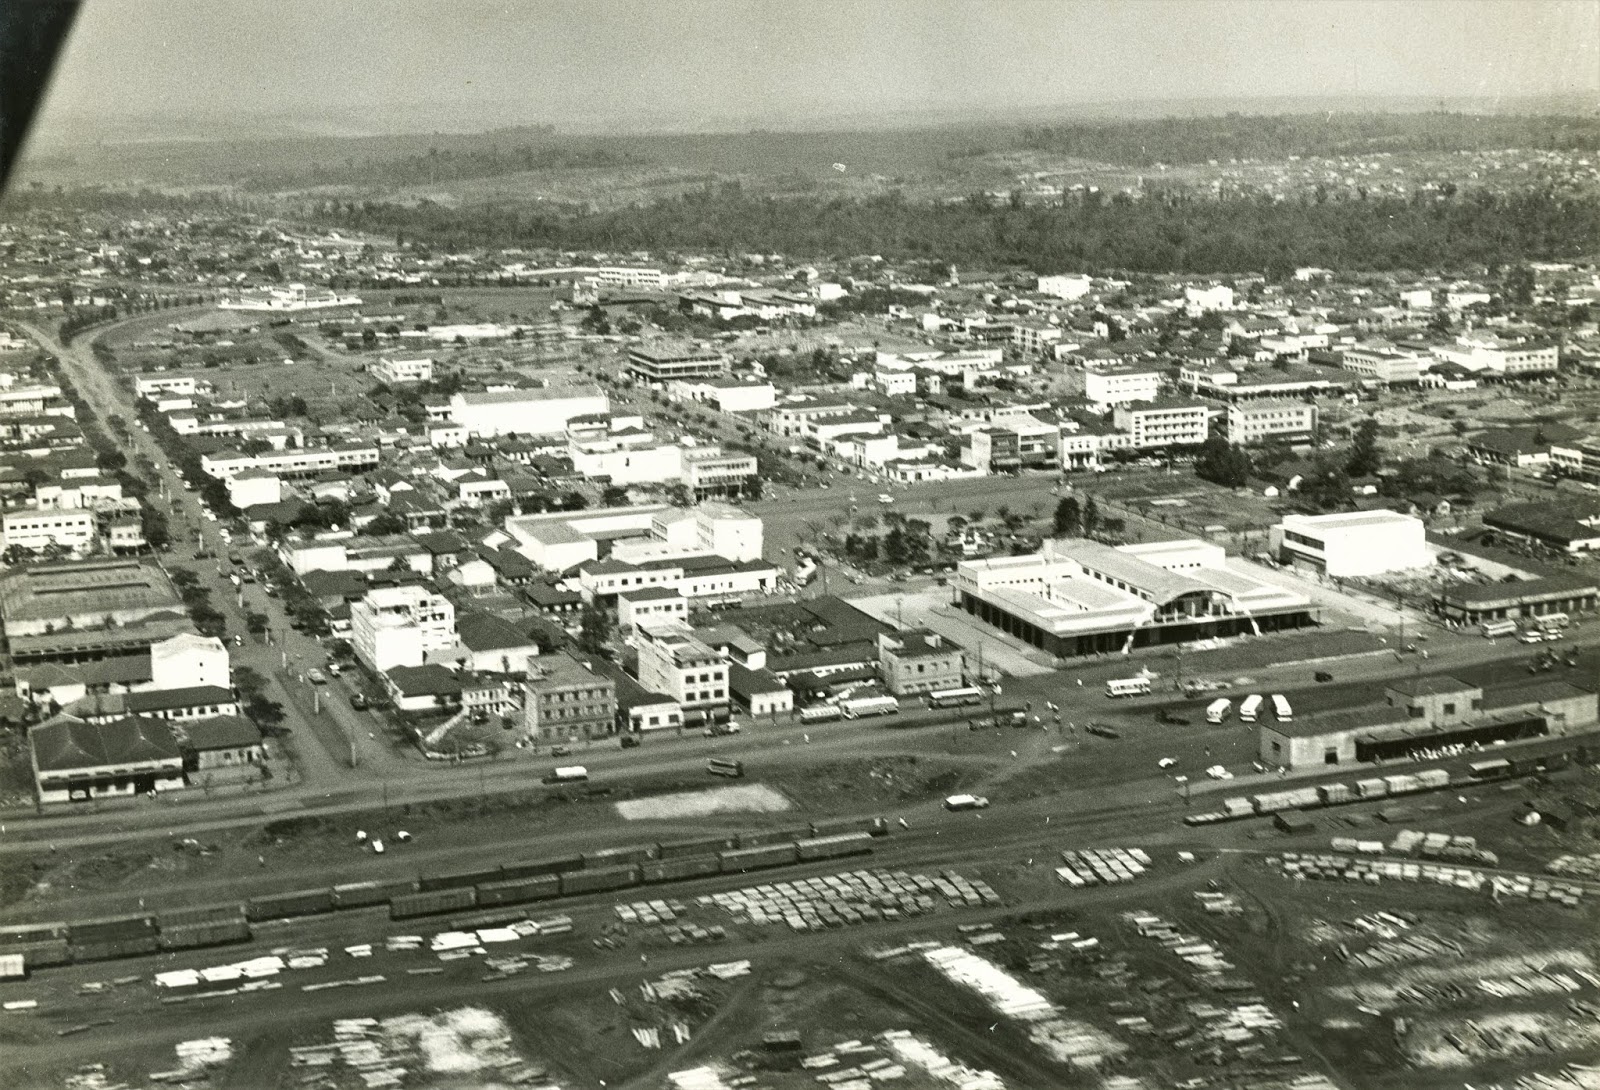 Vista aérea do Centro - Década de 1960